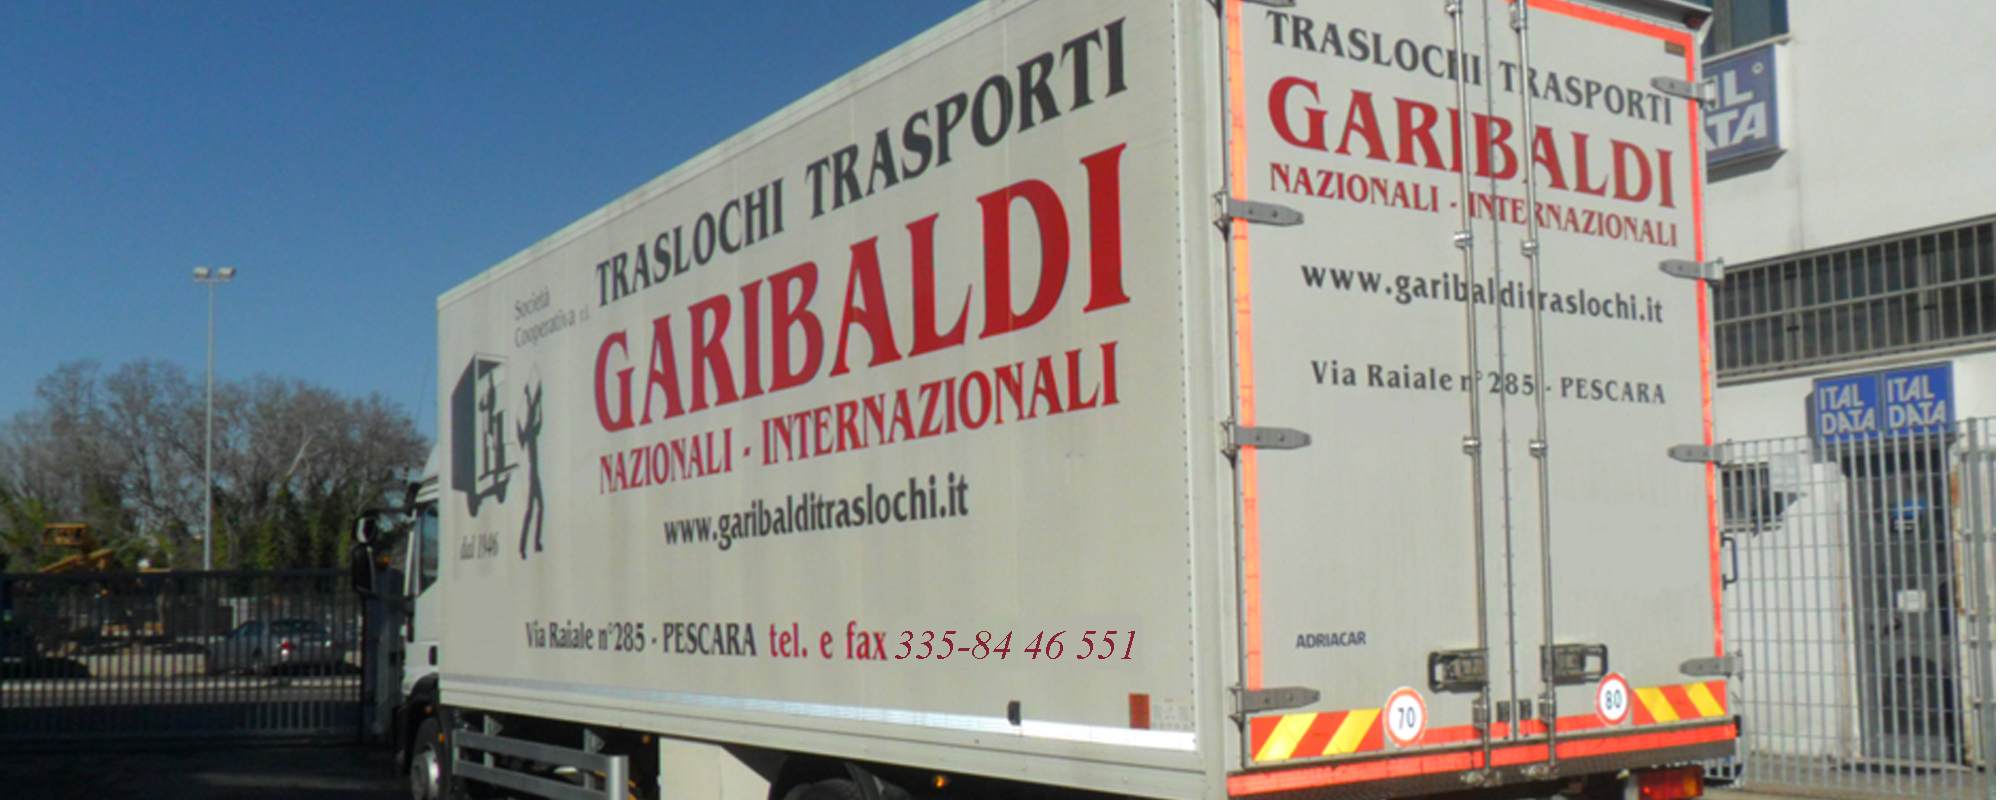 Garibaldi Traslochi Trasporti e Servizi